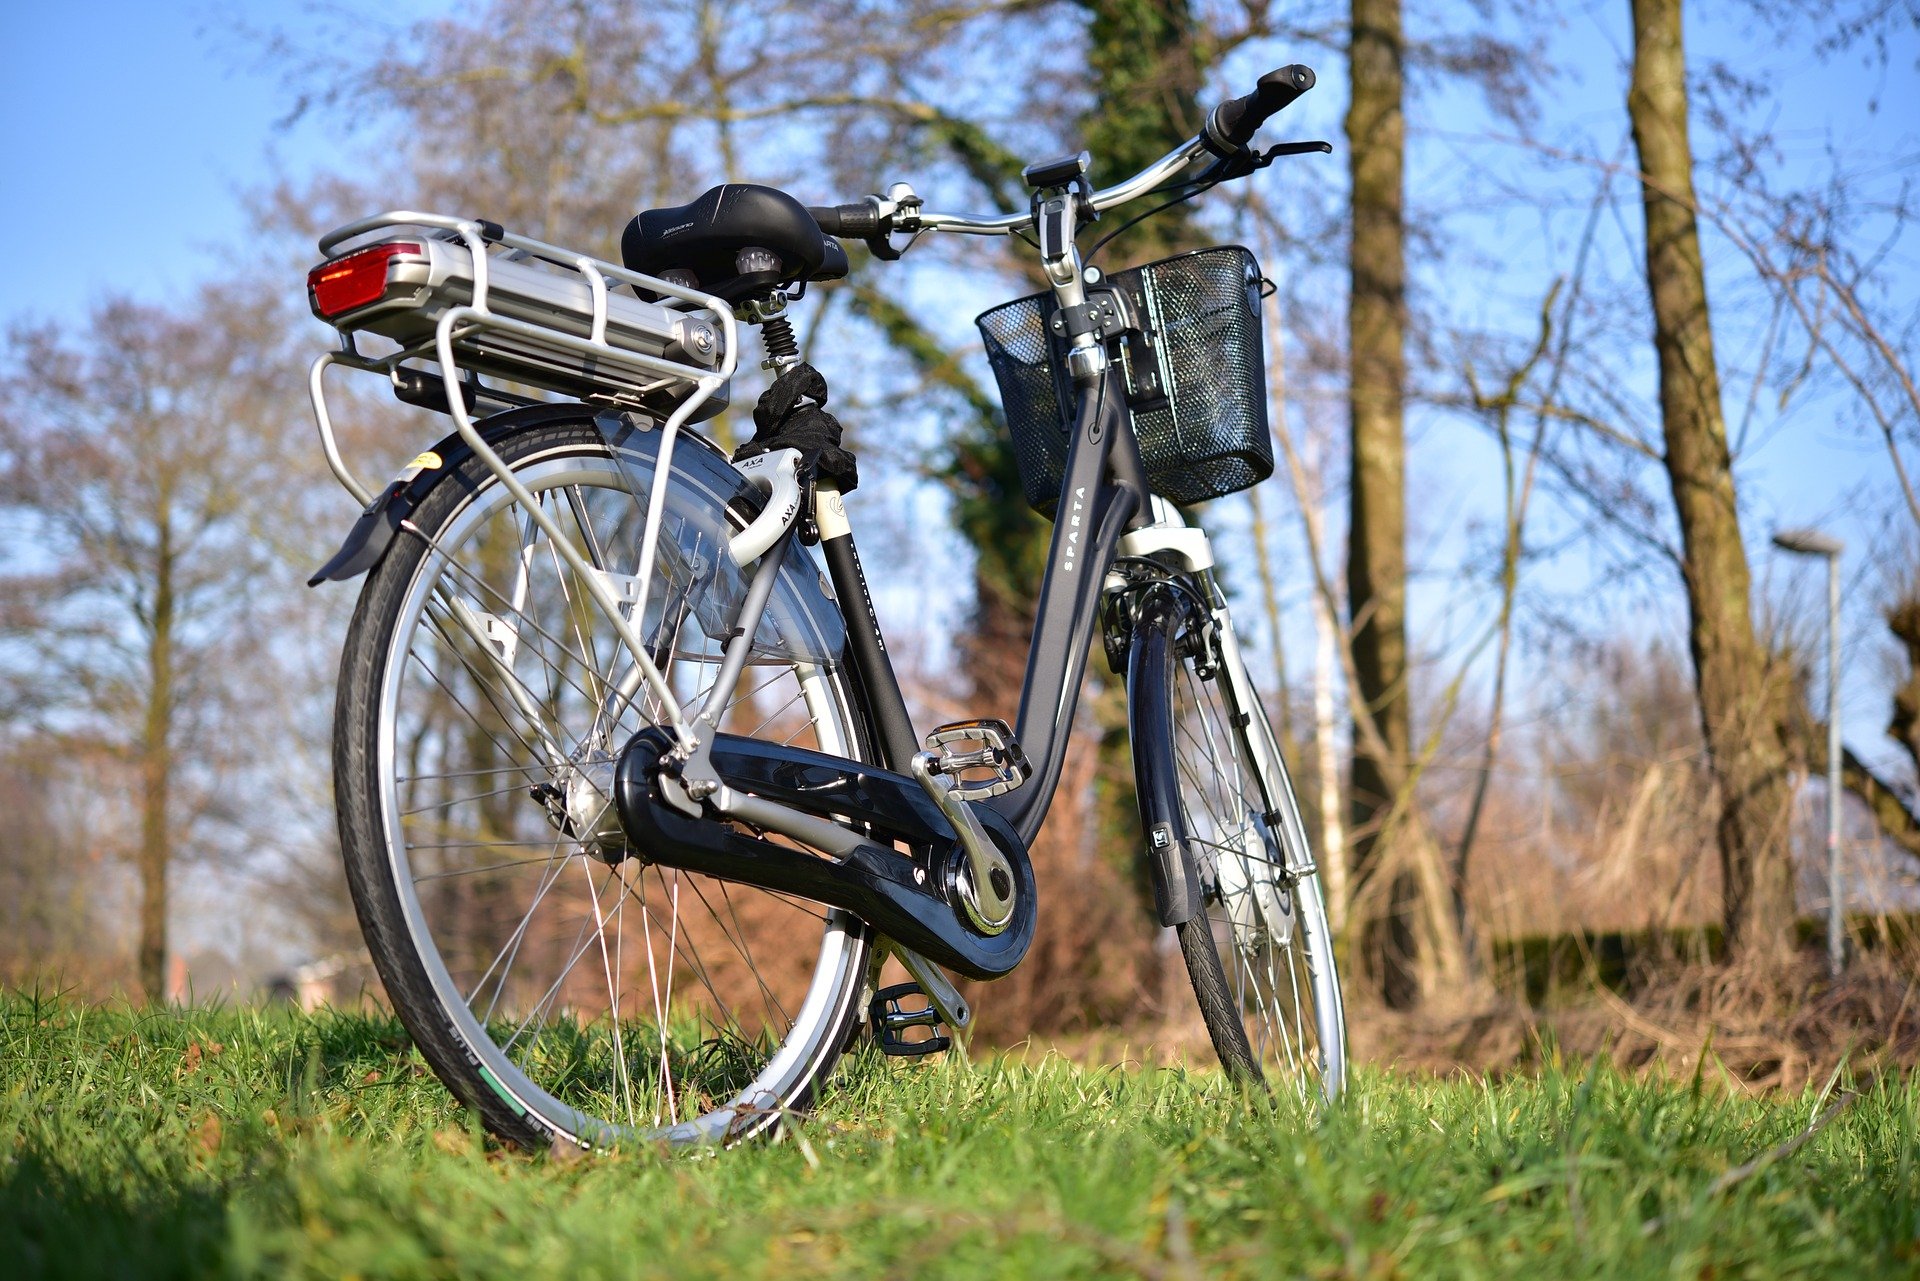 Resoneer Ja Vaardigheid Is mijn fiets batterij aan vervanging toe? Lees het snel in ons blogartikel!